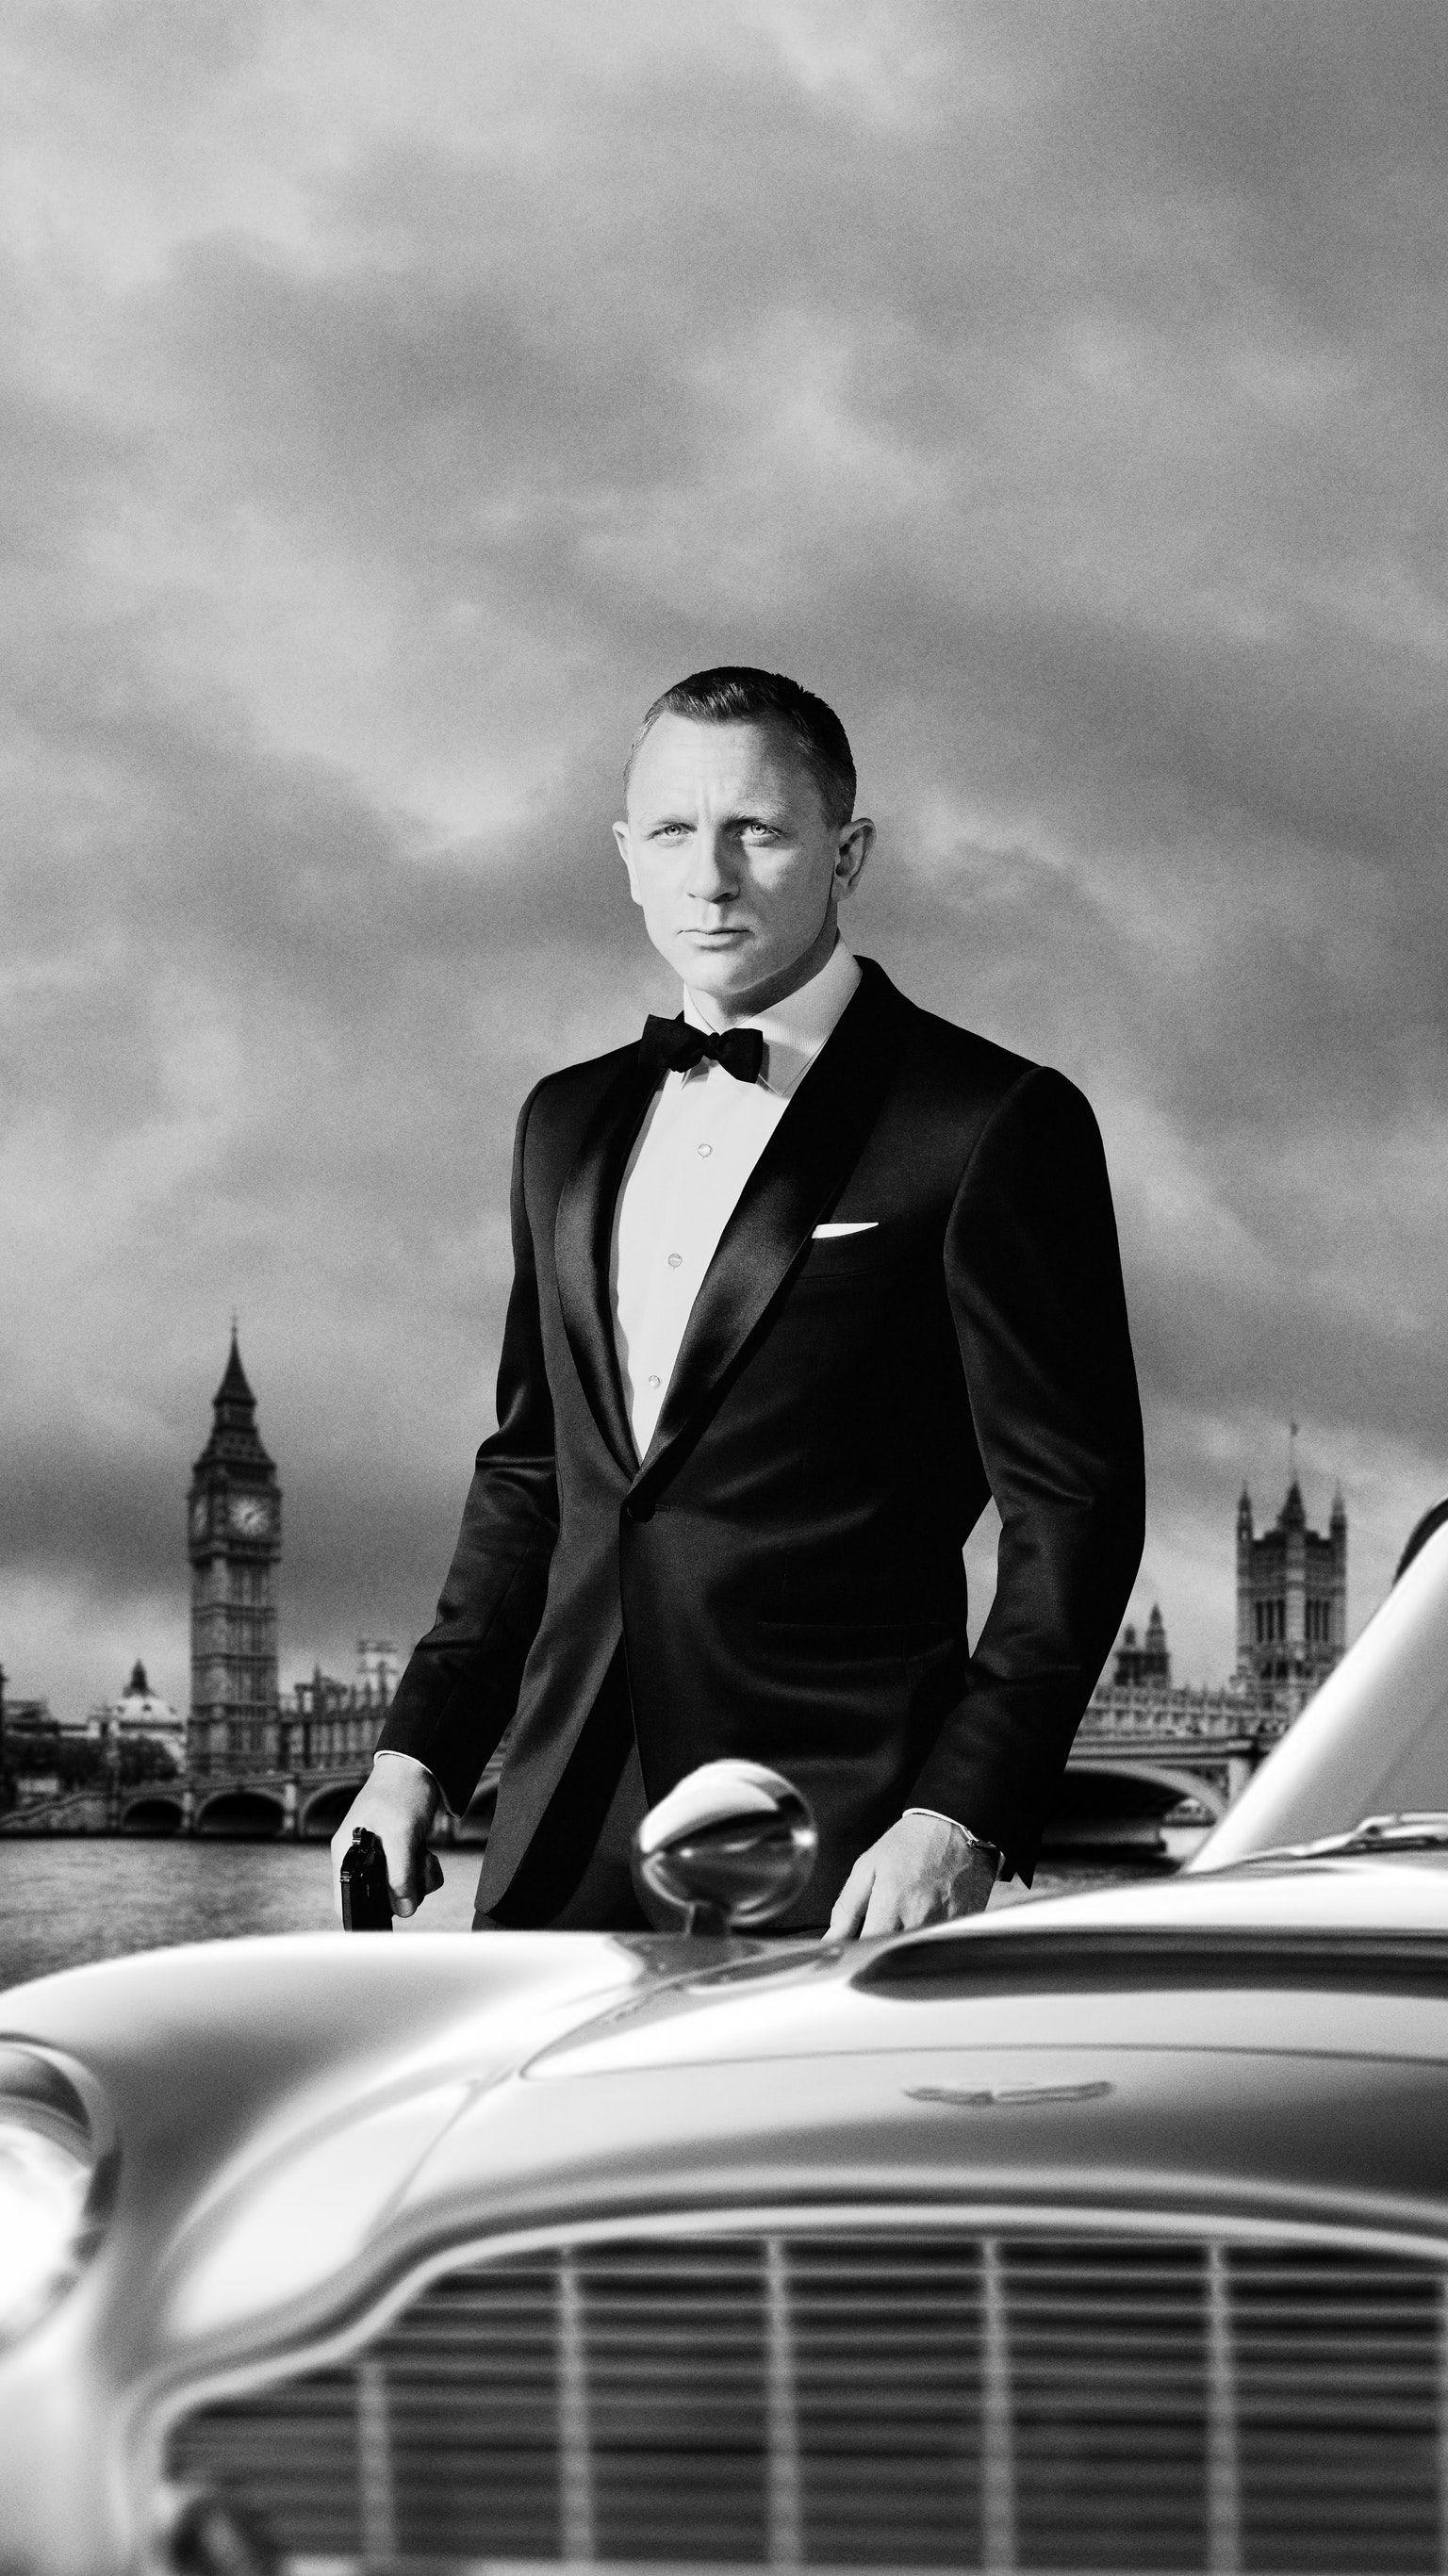 James Bond Background Vector Images (55)